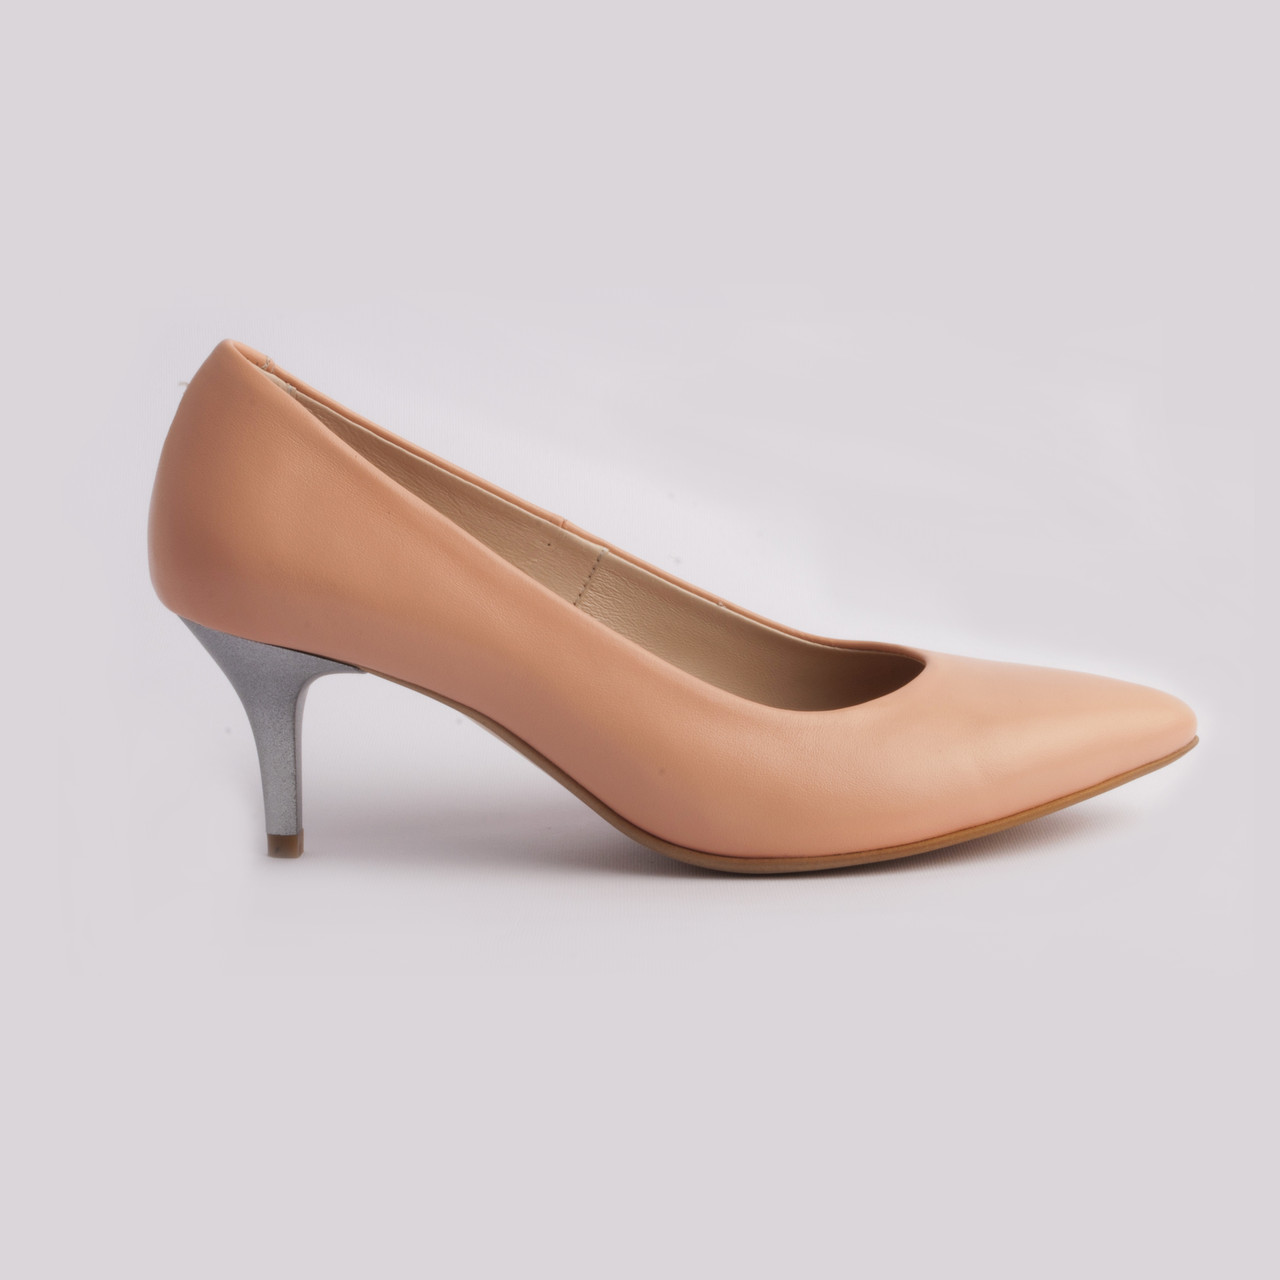 Класичні туфлі шкіряні 36. 39. Woman's heel персикові з загостреним носком на низькому каблуці, фото 1